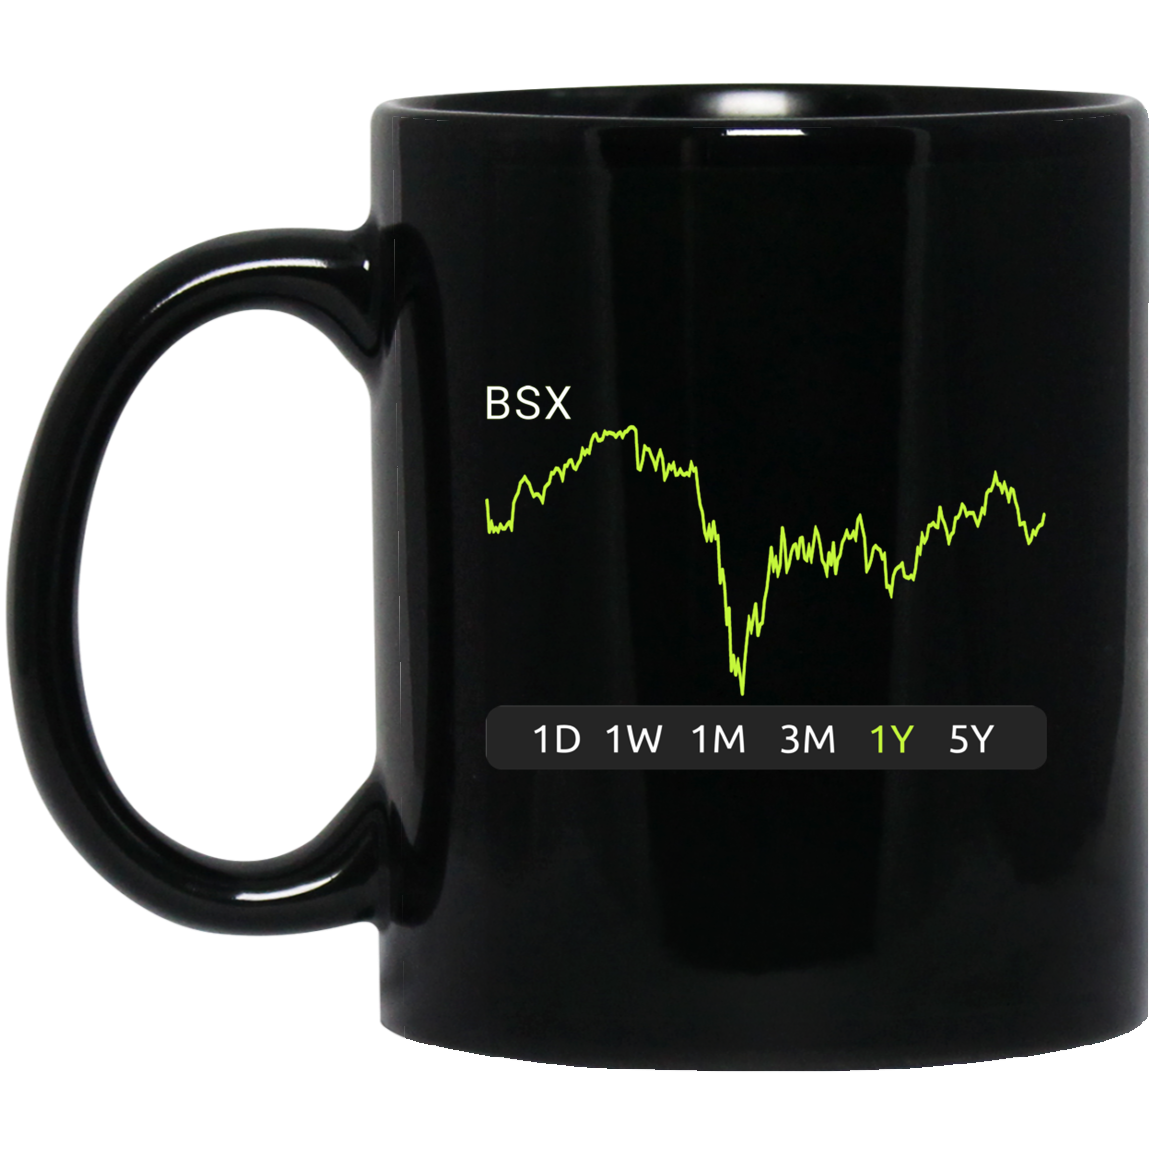 BSX Stock 1y Mug